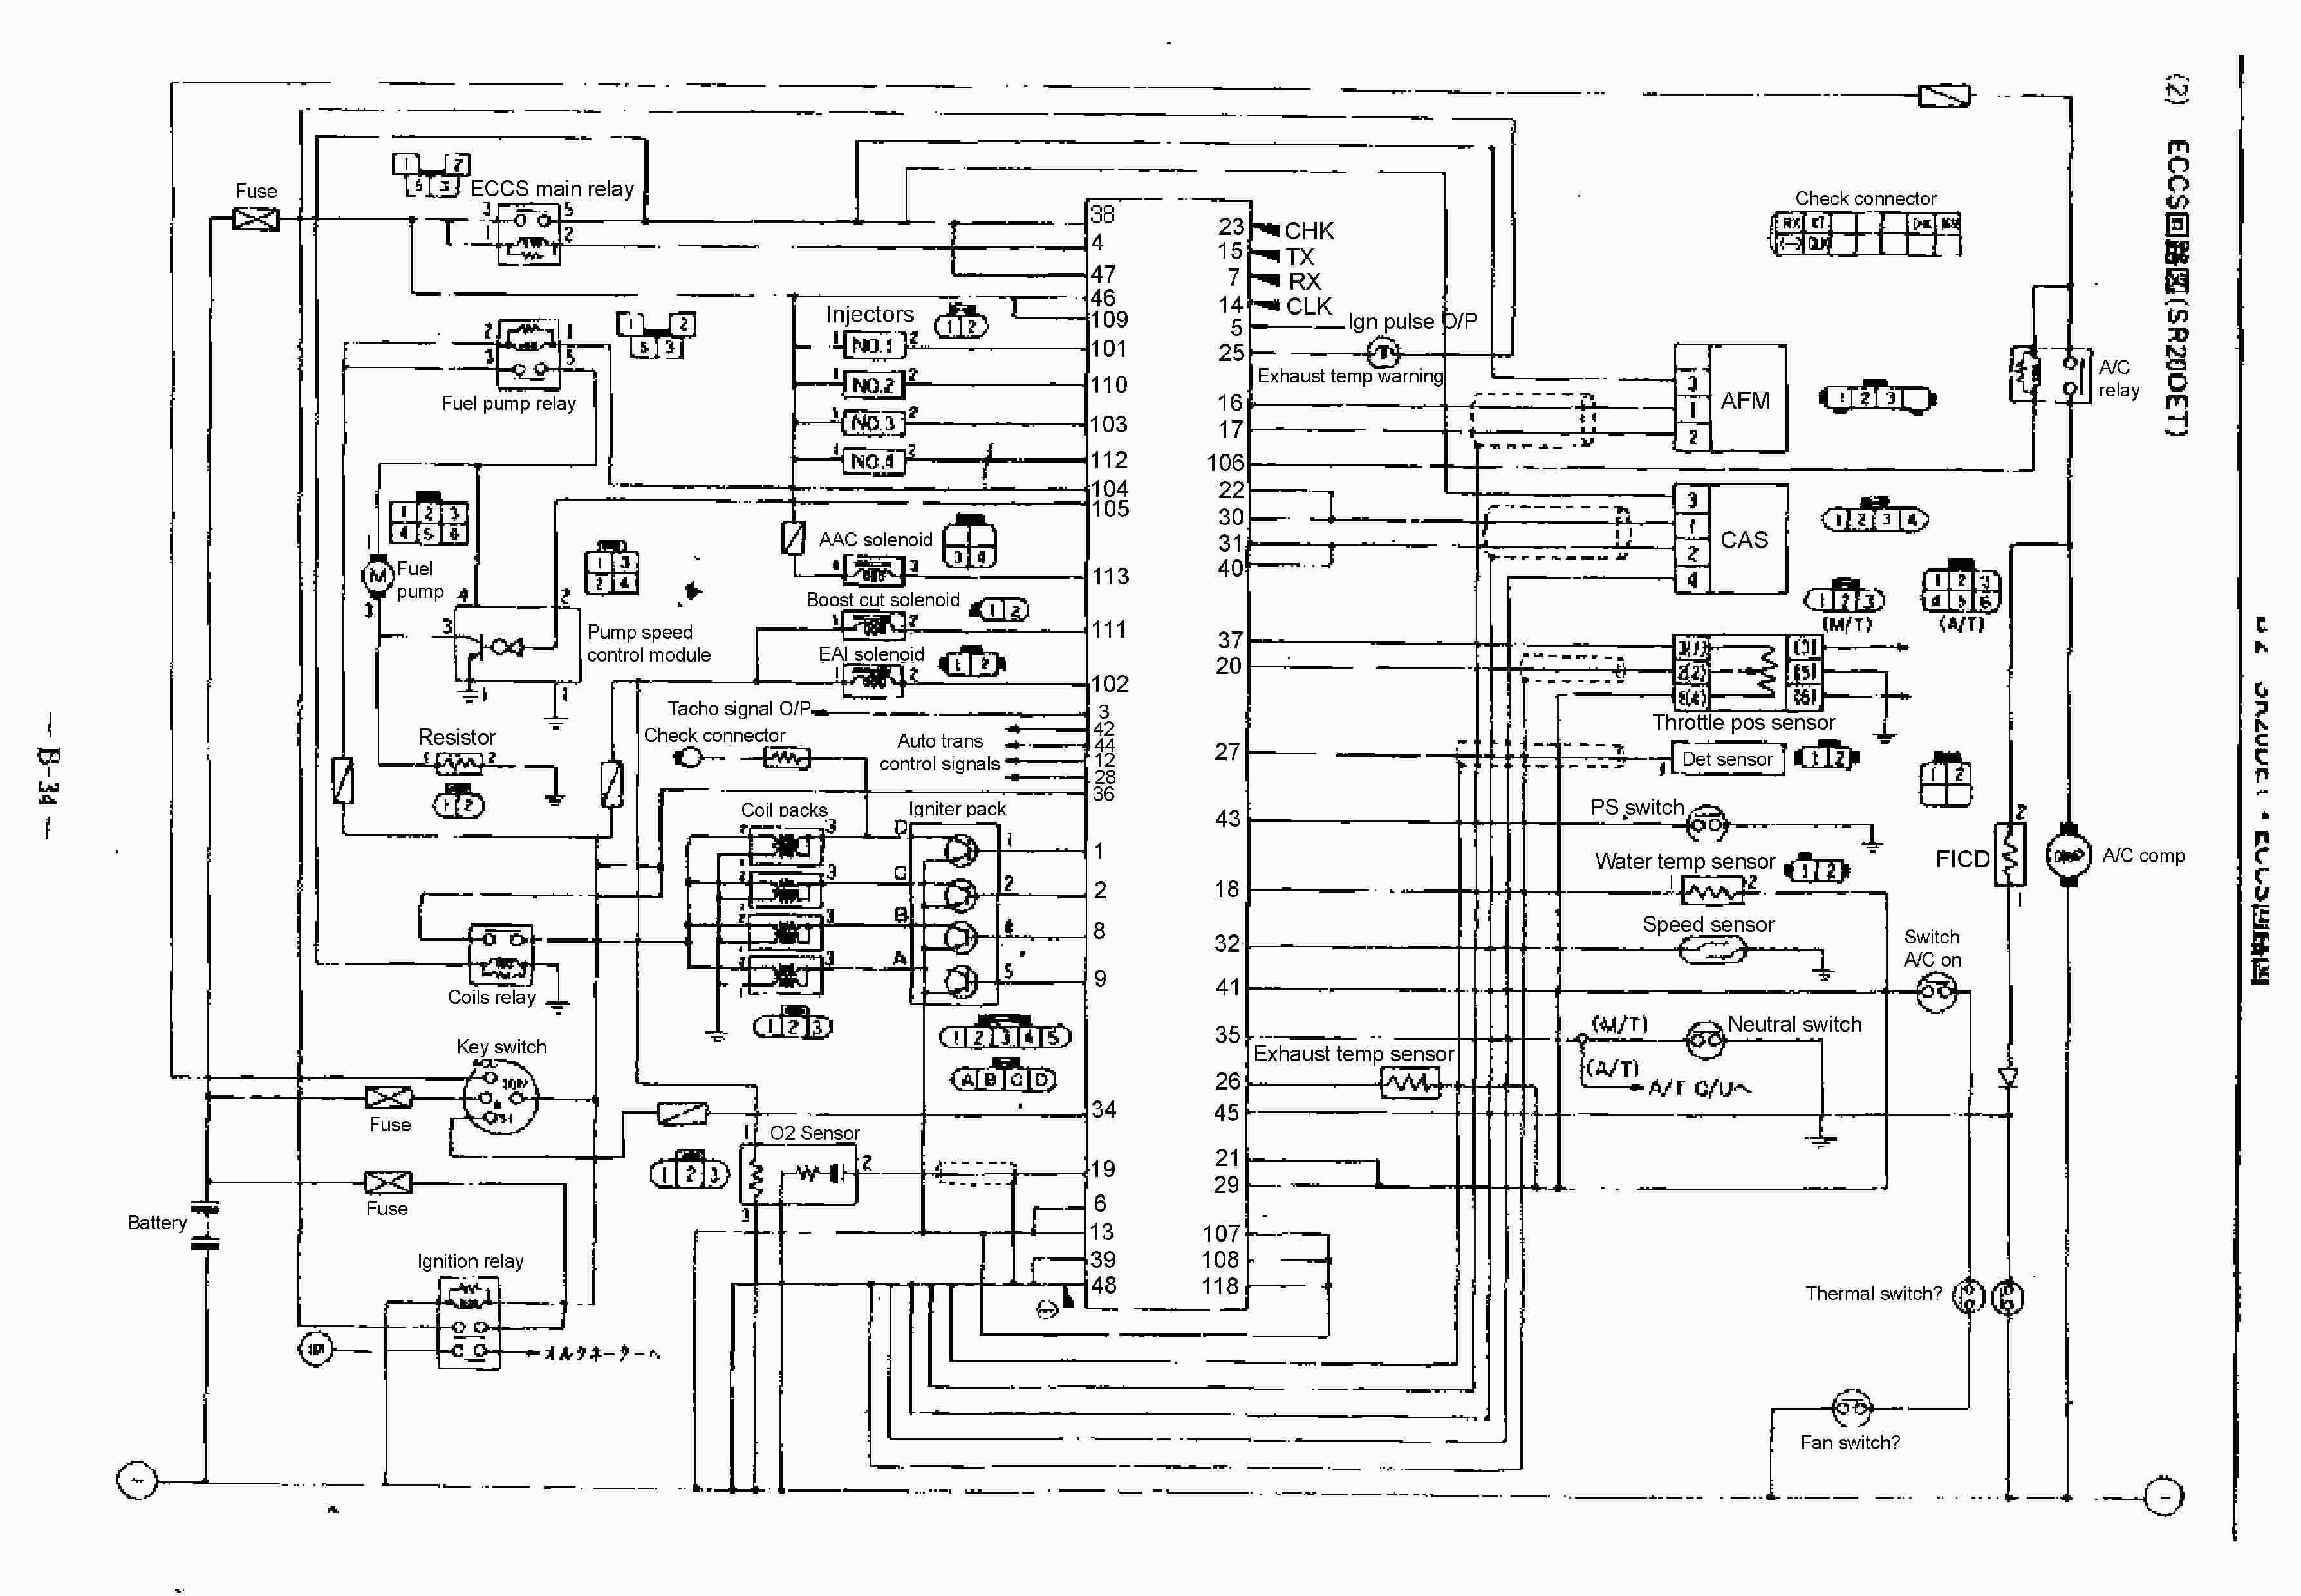 bluebird bus wiring diagram wiring systems and methods rh rockeyshores bluebird bus wiring schematics blue